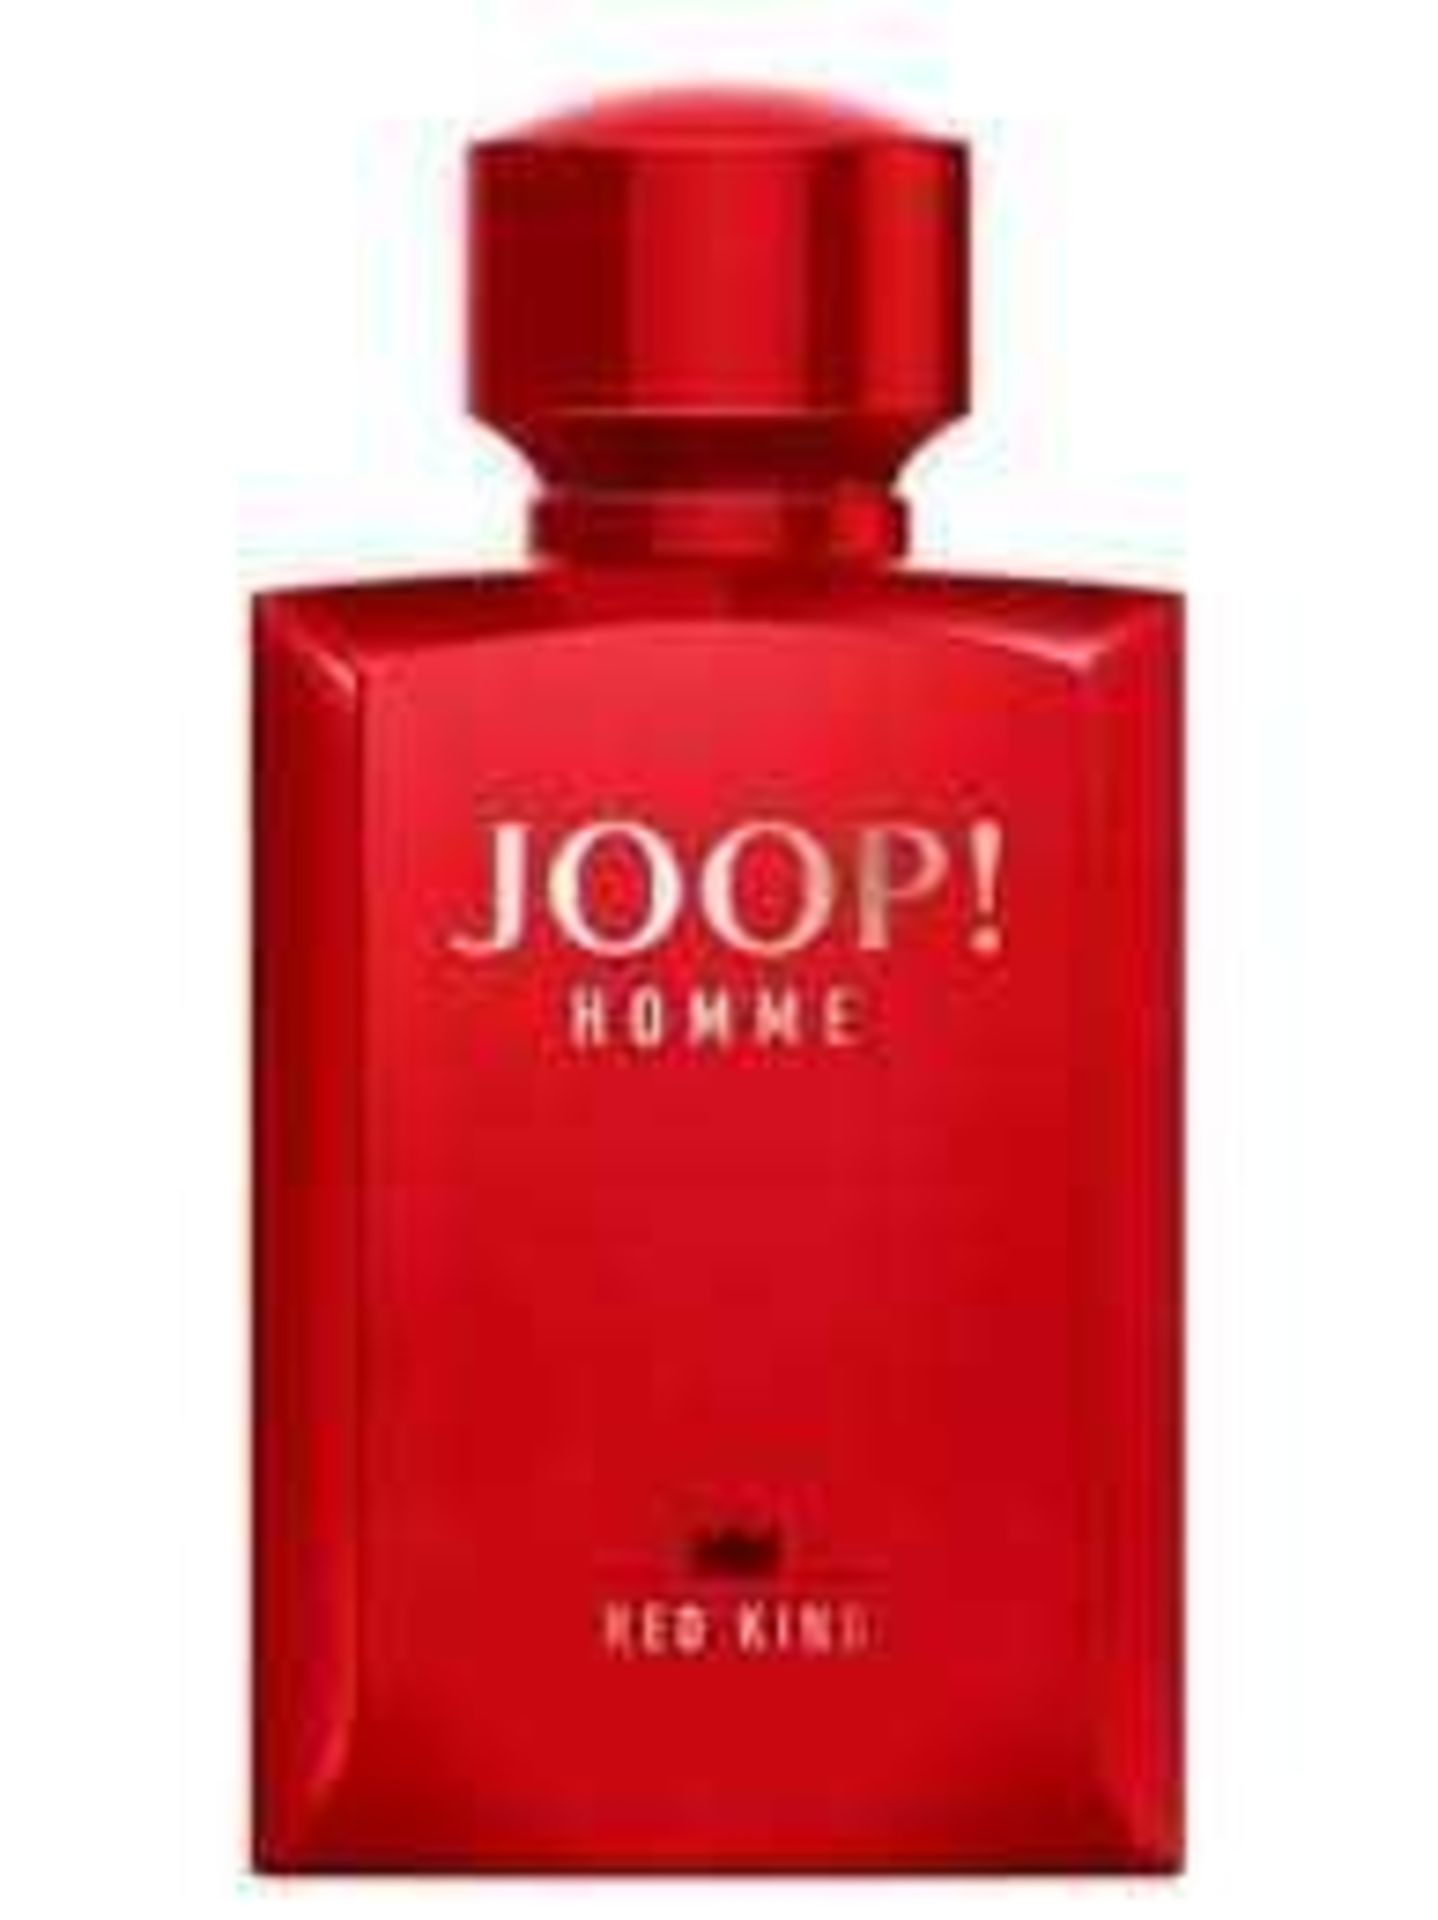 RRP £35 Each Unboxed 125 Ml Bottles Of Joop Homme Red King And Joop Homme Black King Edt Spray Ex-Di